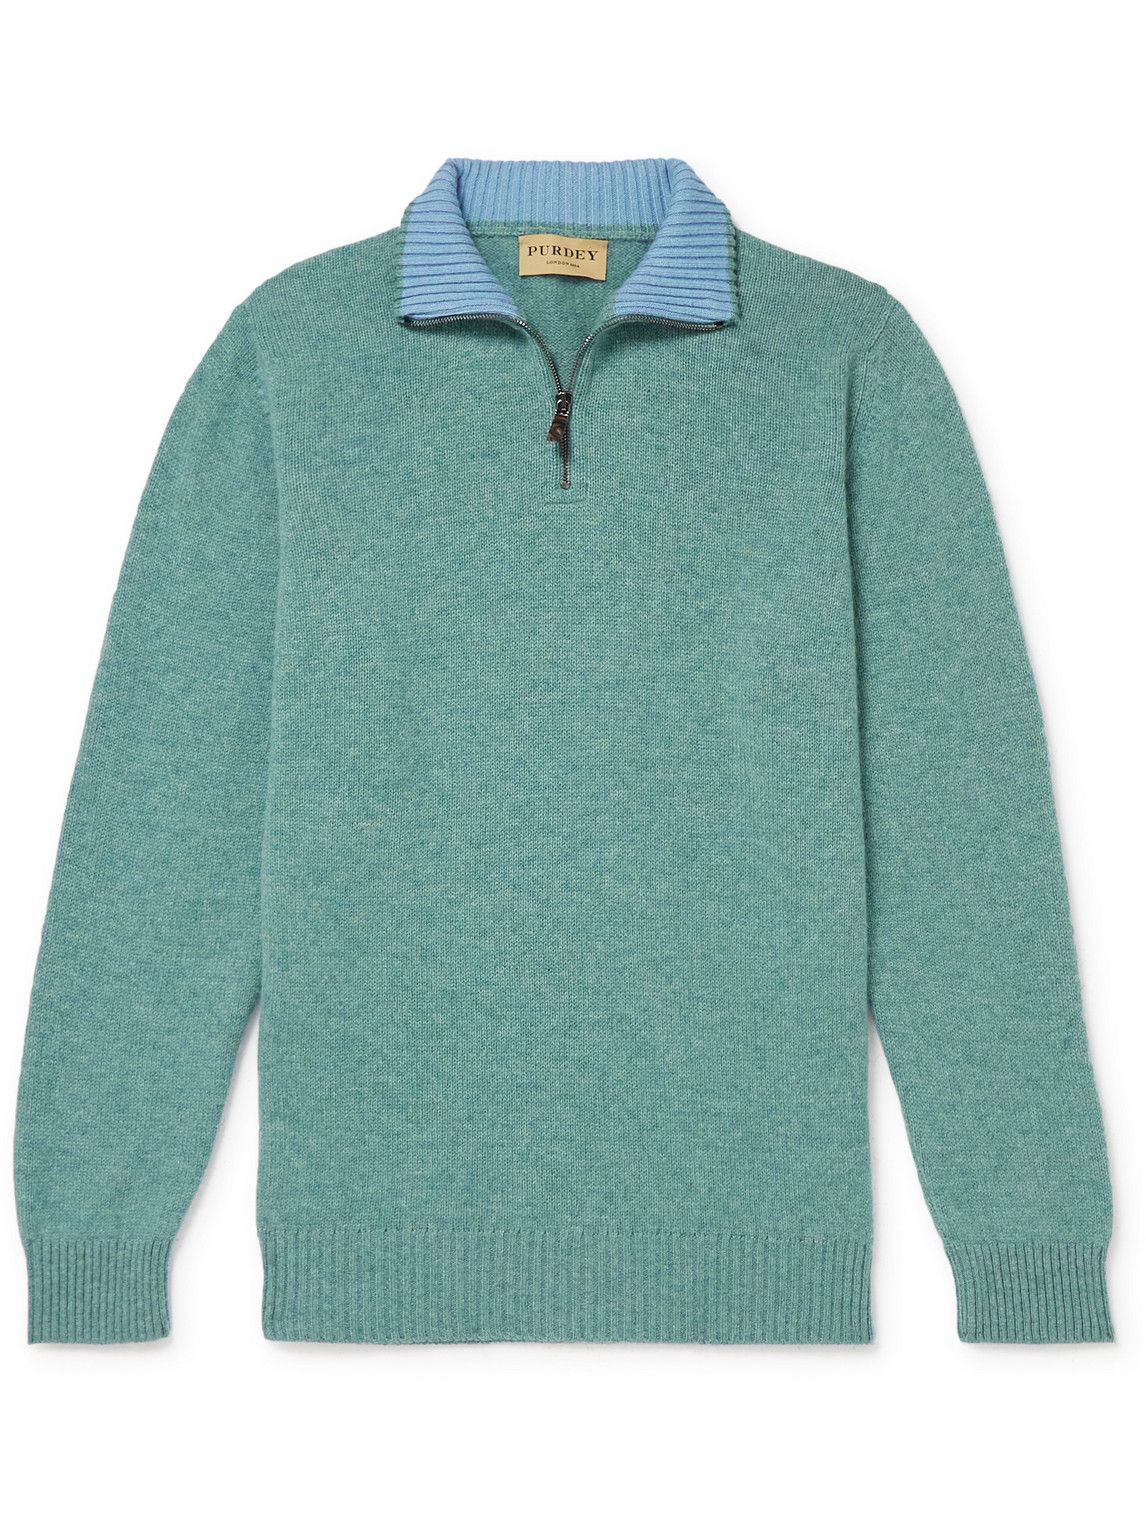 Purdey - Slim-Fit Mélange Cashmere Half-Zip Sweater - Green Purdey